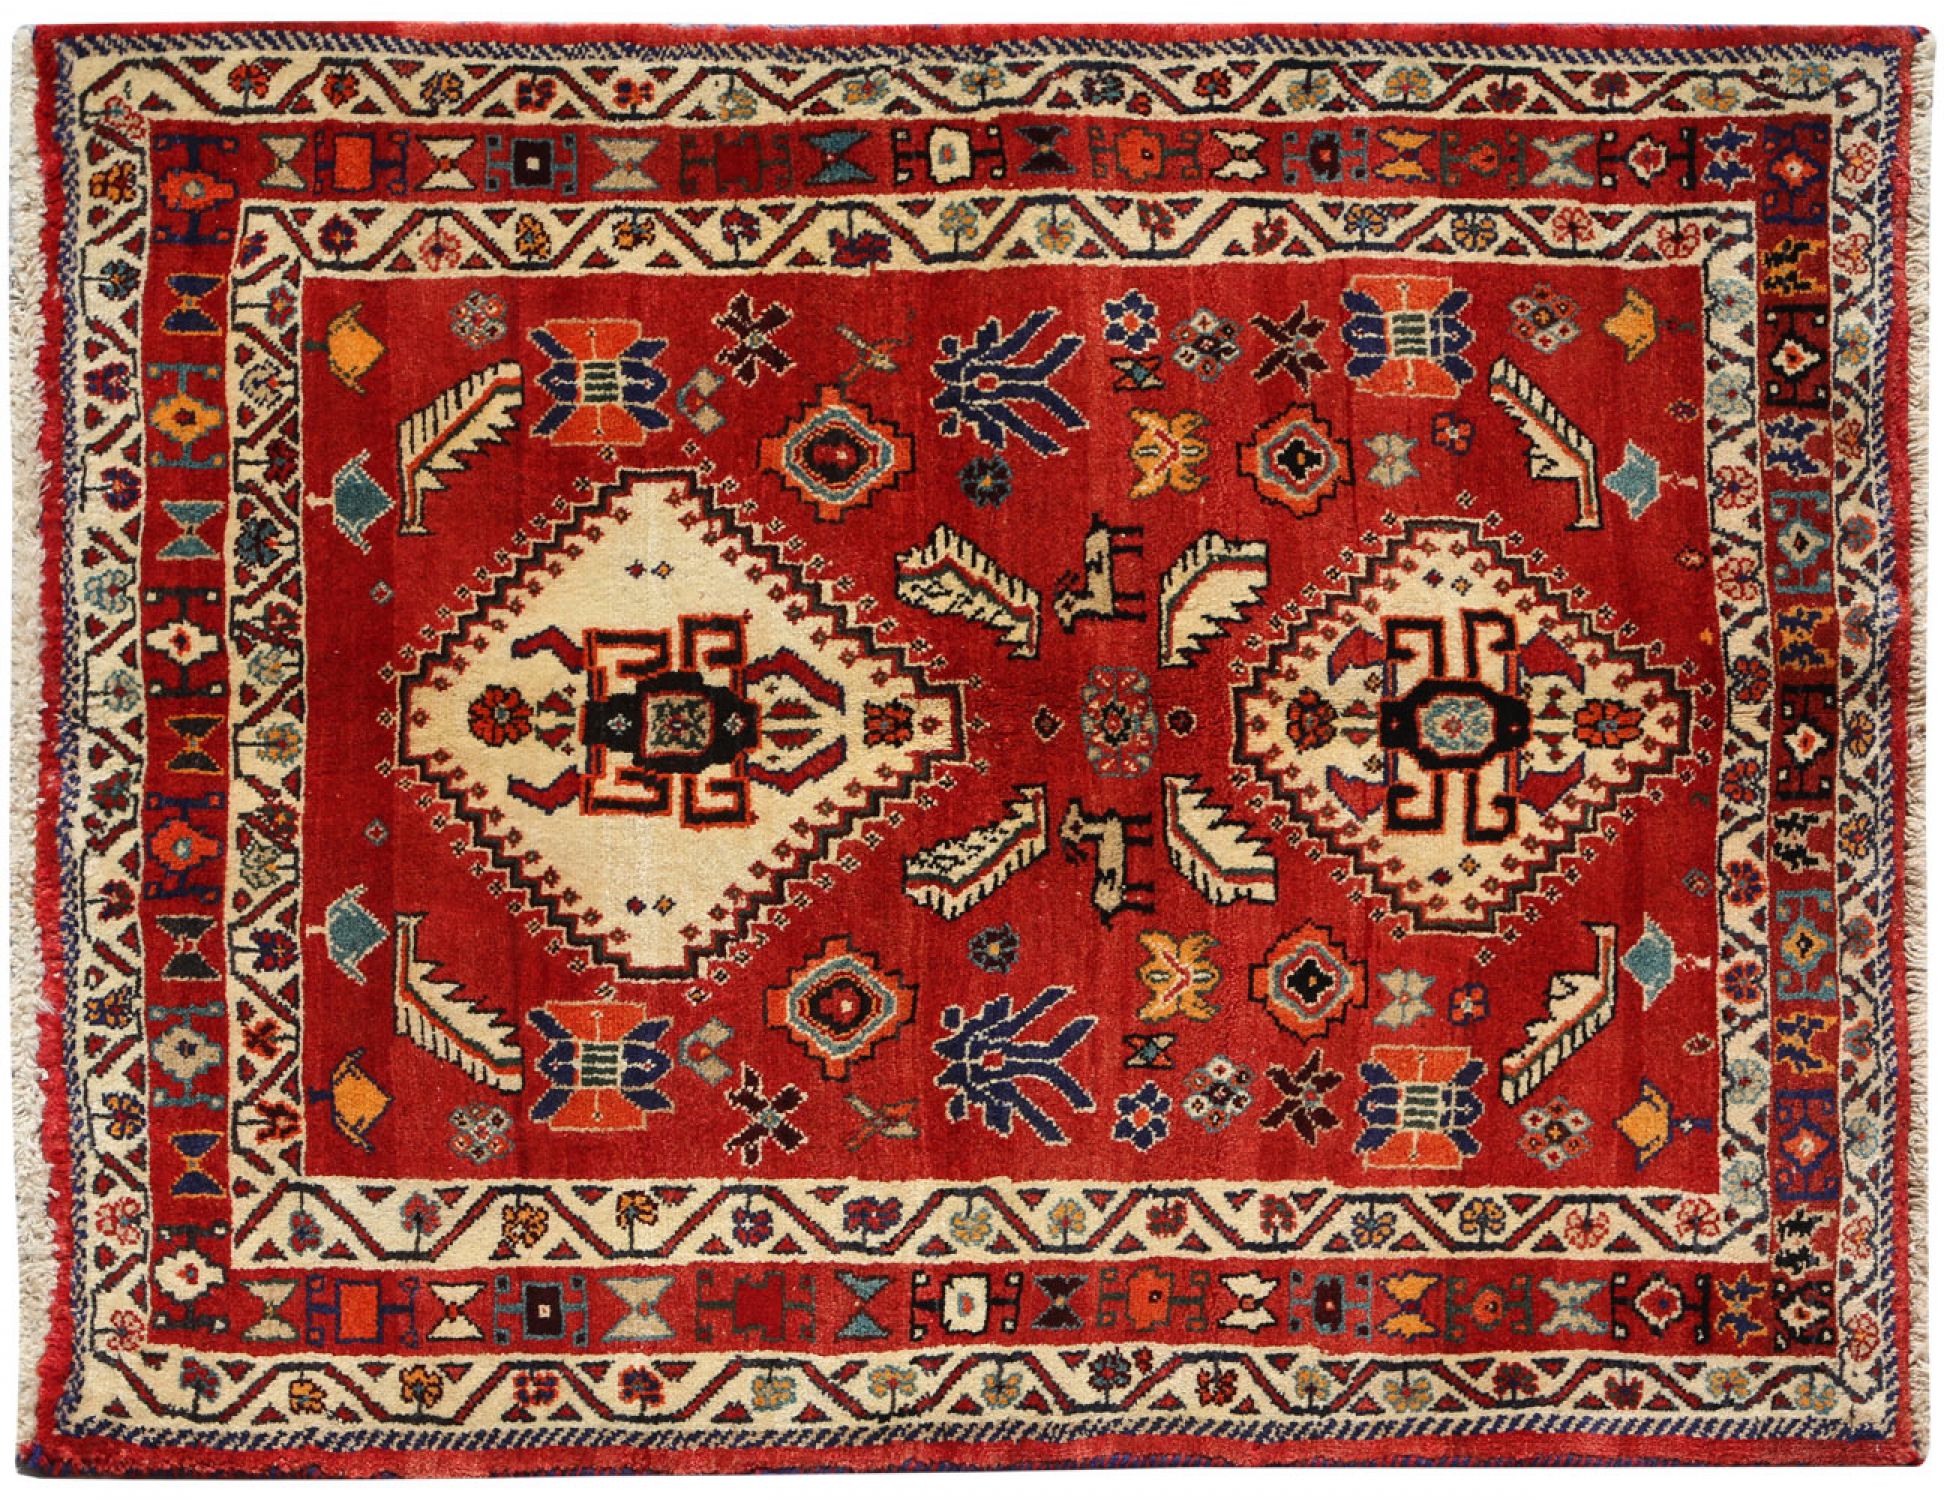  Περσικό    Κόκκινο <br/>168 x 124 cm